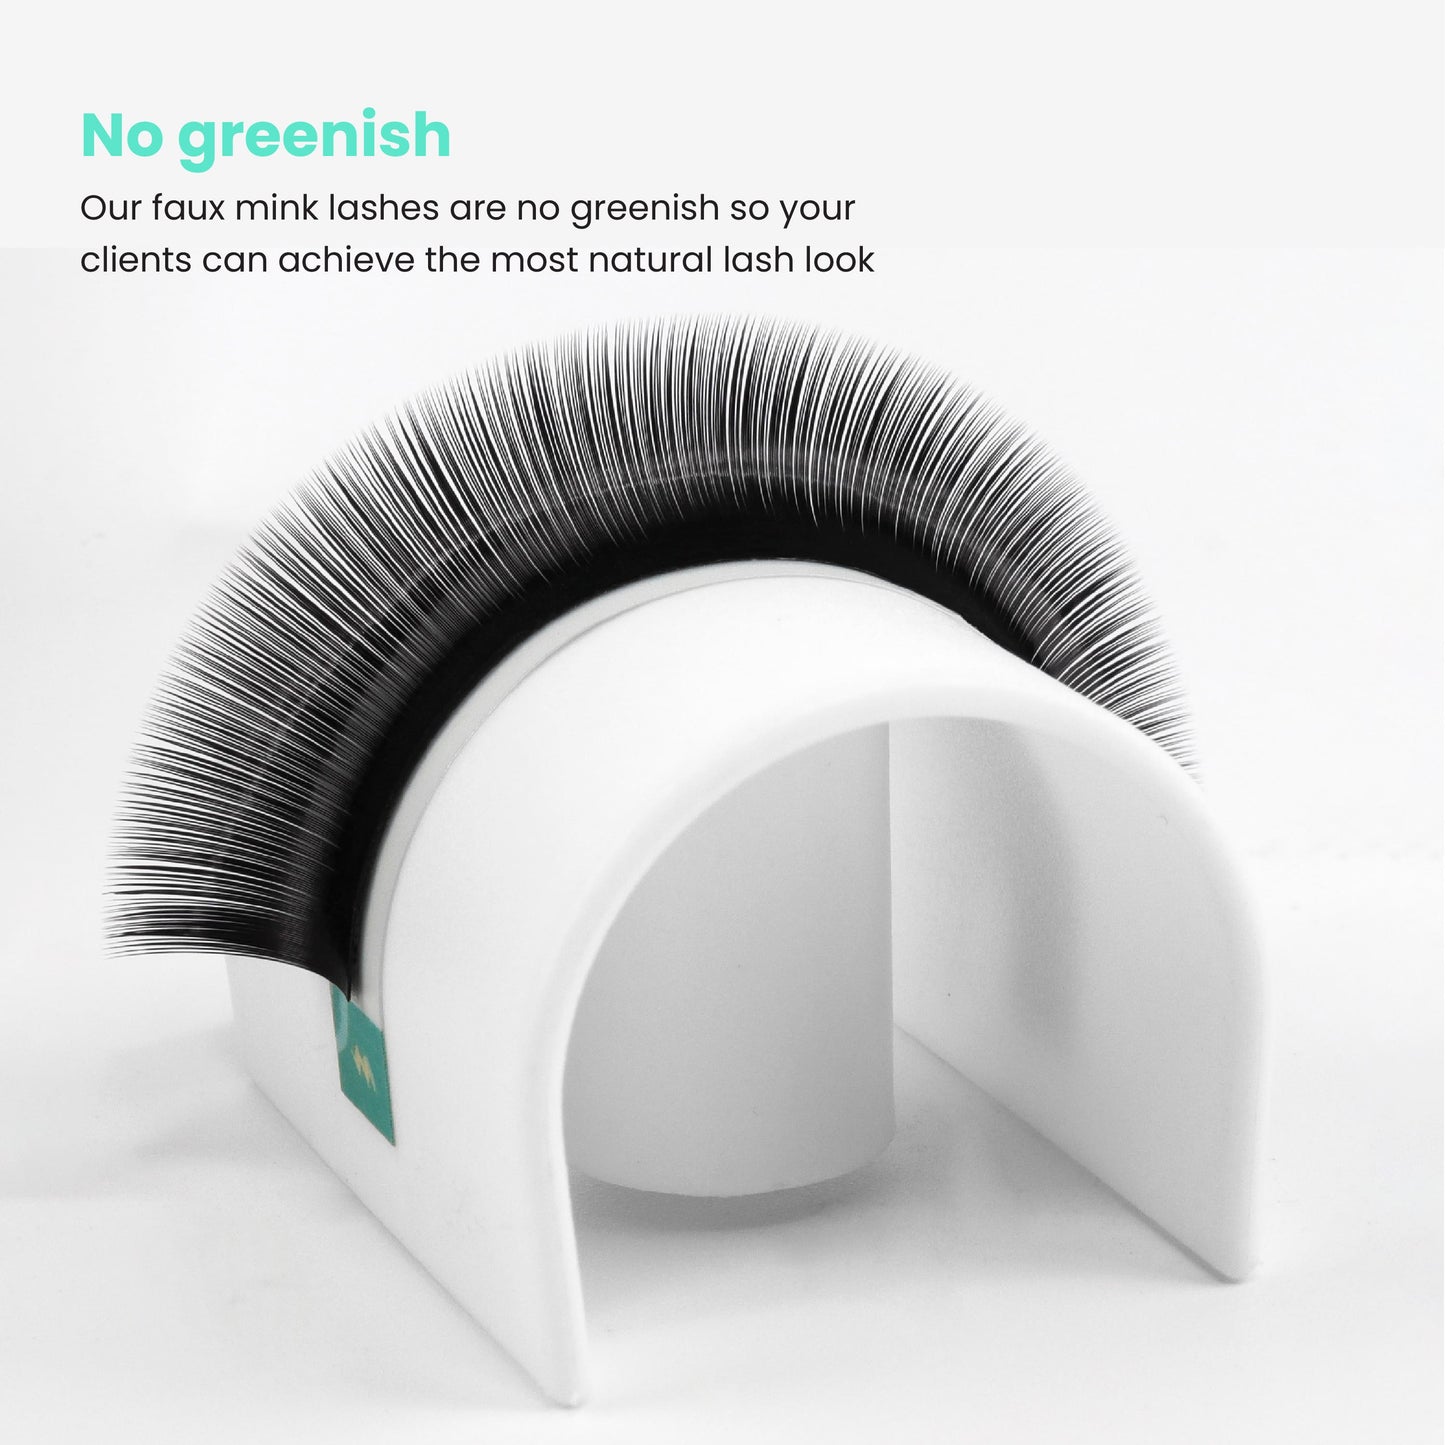 Faux Mink- Volume Lashes no greenish - wholesale Faux lash extension manufacturer & retailer